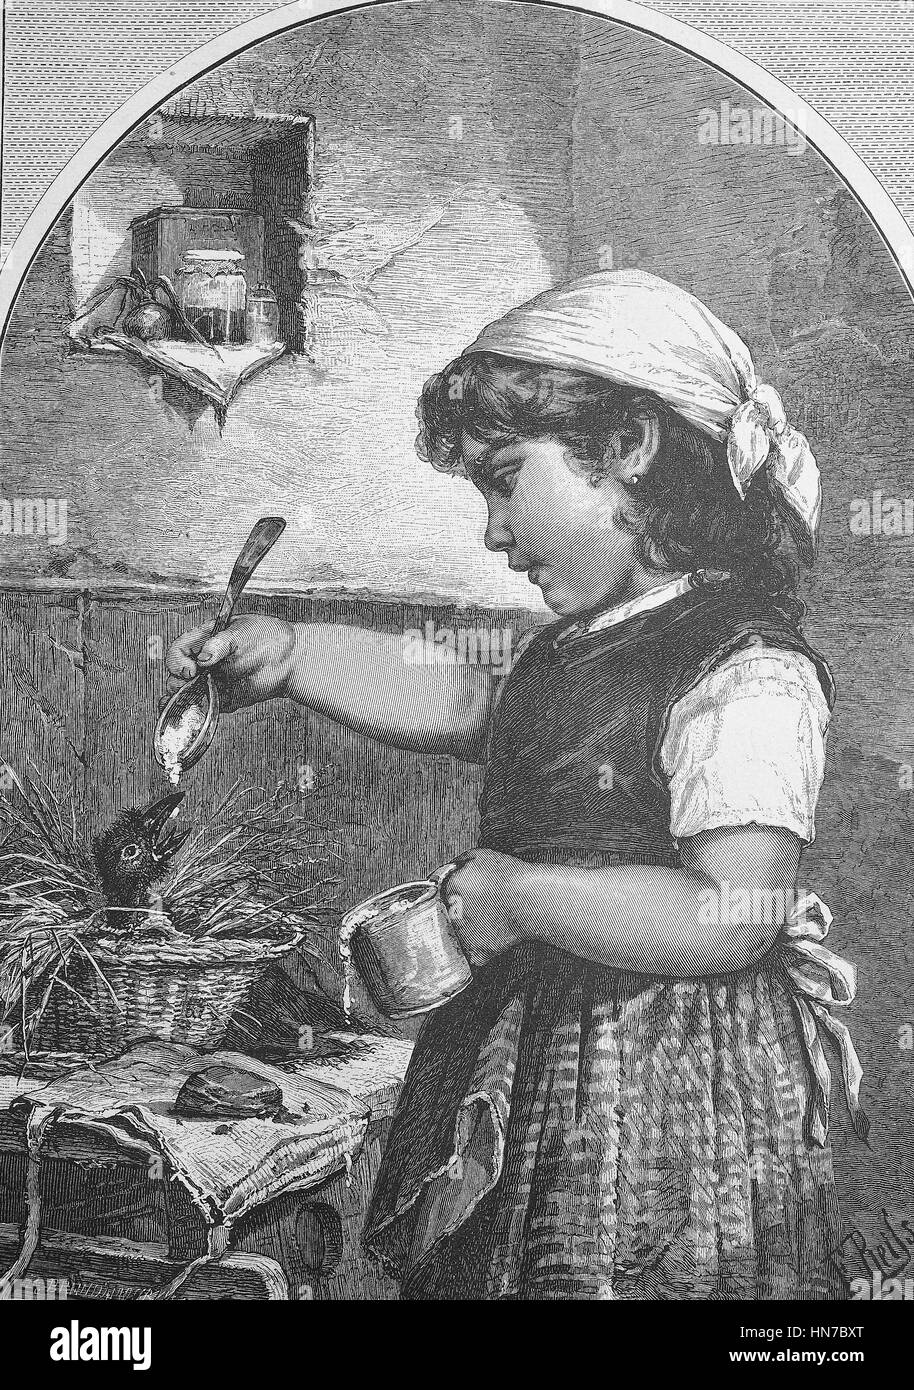 L'enfant trouvé. Alimentation fille un jeune oiseau assis dans le nid, l'alimentation avec une cuillère, Der Findling. Fuettert Jungvogel Maedchen einen der im Nest sitzt, Fuetterung mit einem Loeffel, gravure sur bois à partir de 1885, l'amélioration numérique Banque D'Images